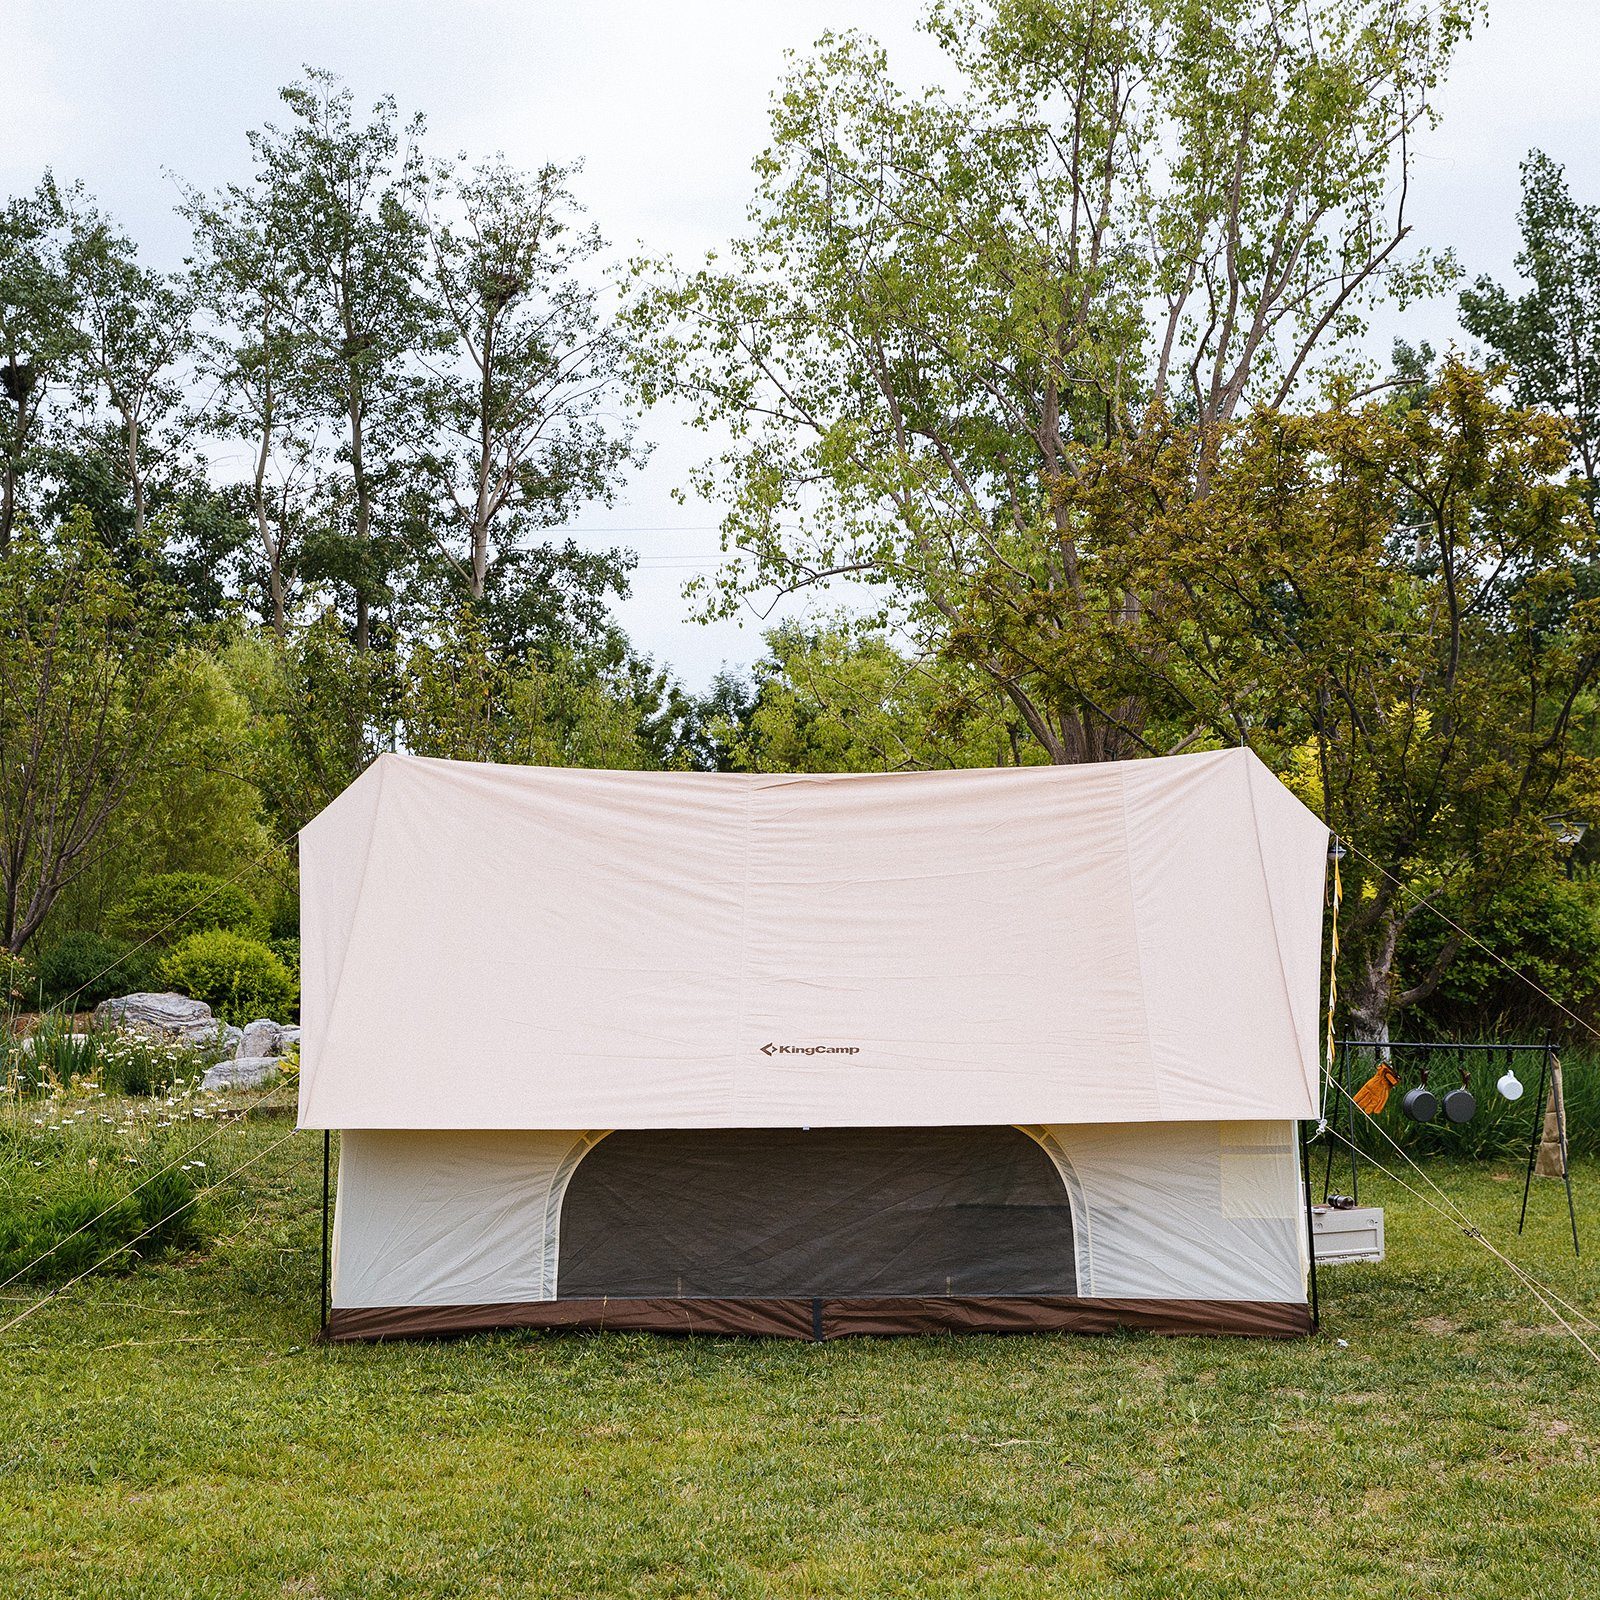 Baumwolle Firstzelt Familien Personen, Zelt Pinehouse Hauszelt 3-4 Campingzelt KingCamp